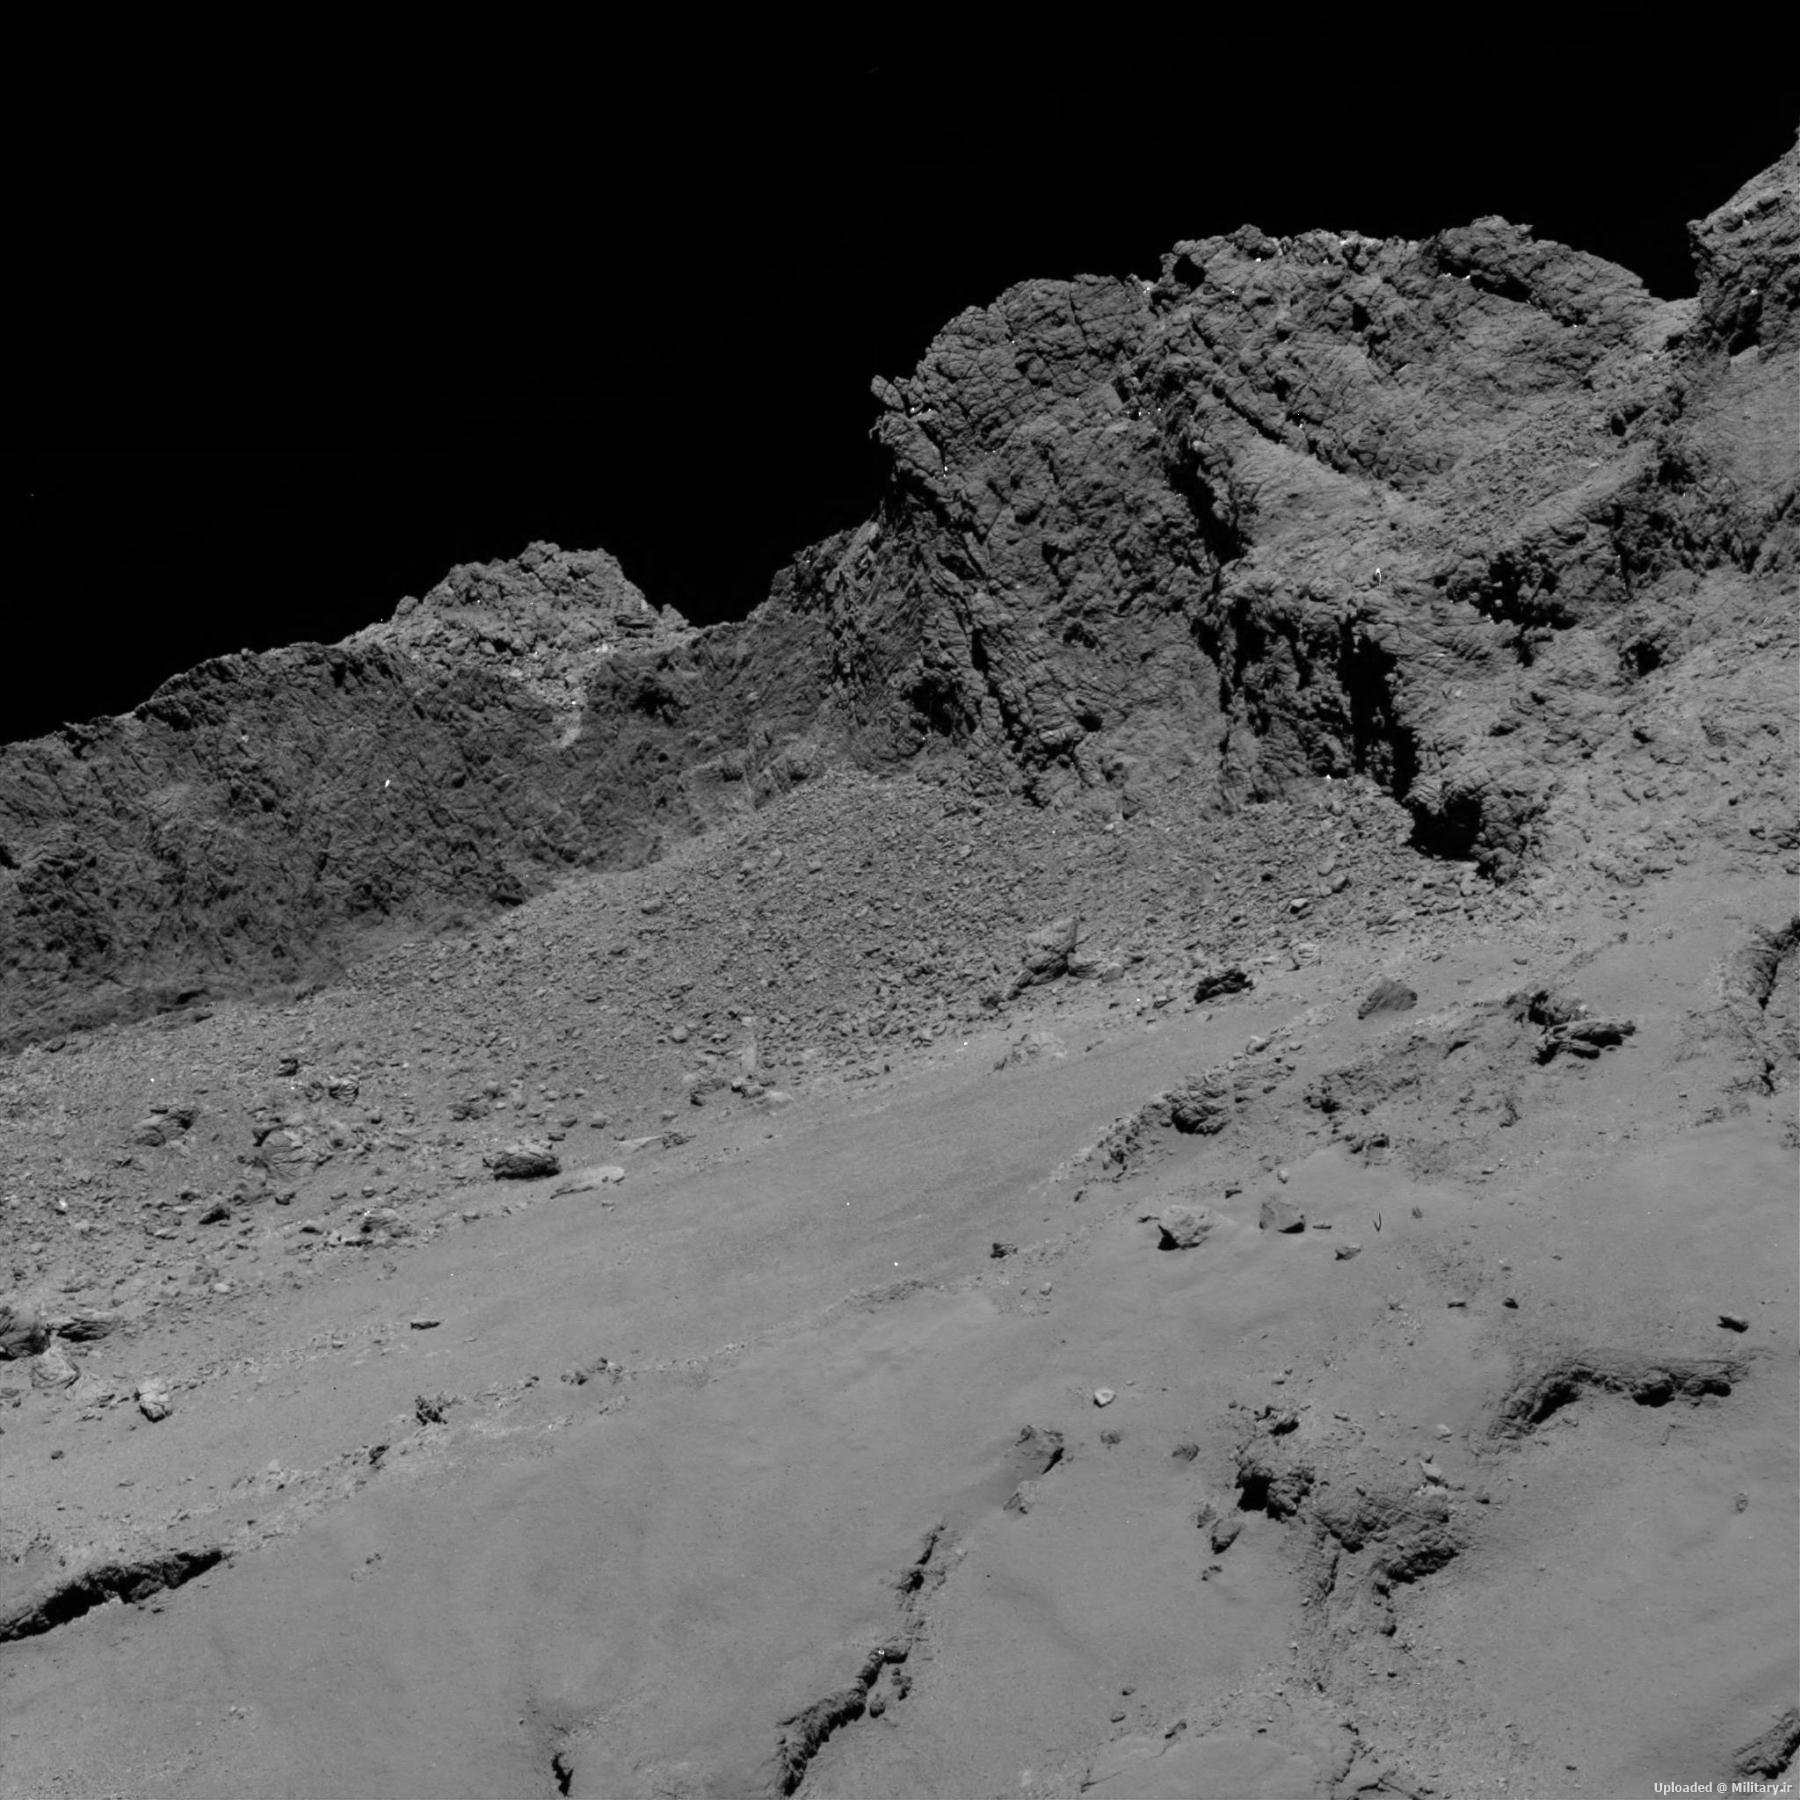 Comet_from_16_km.jpg